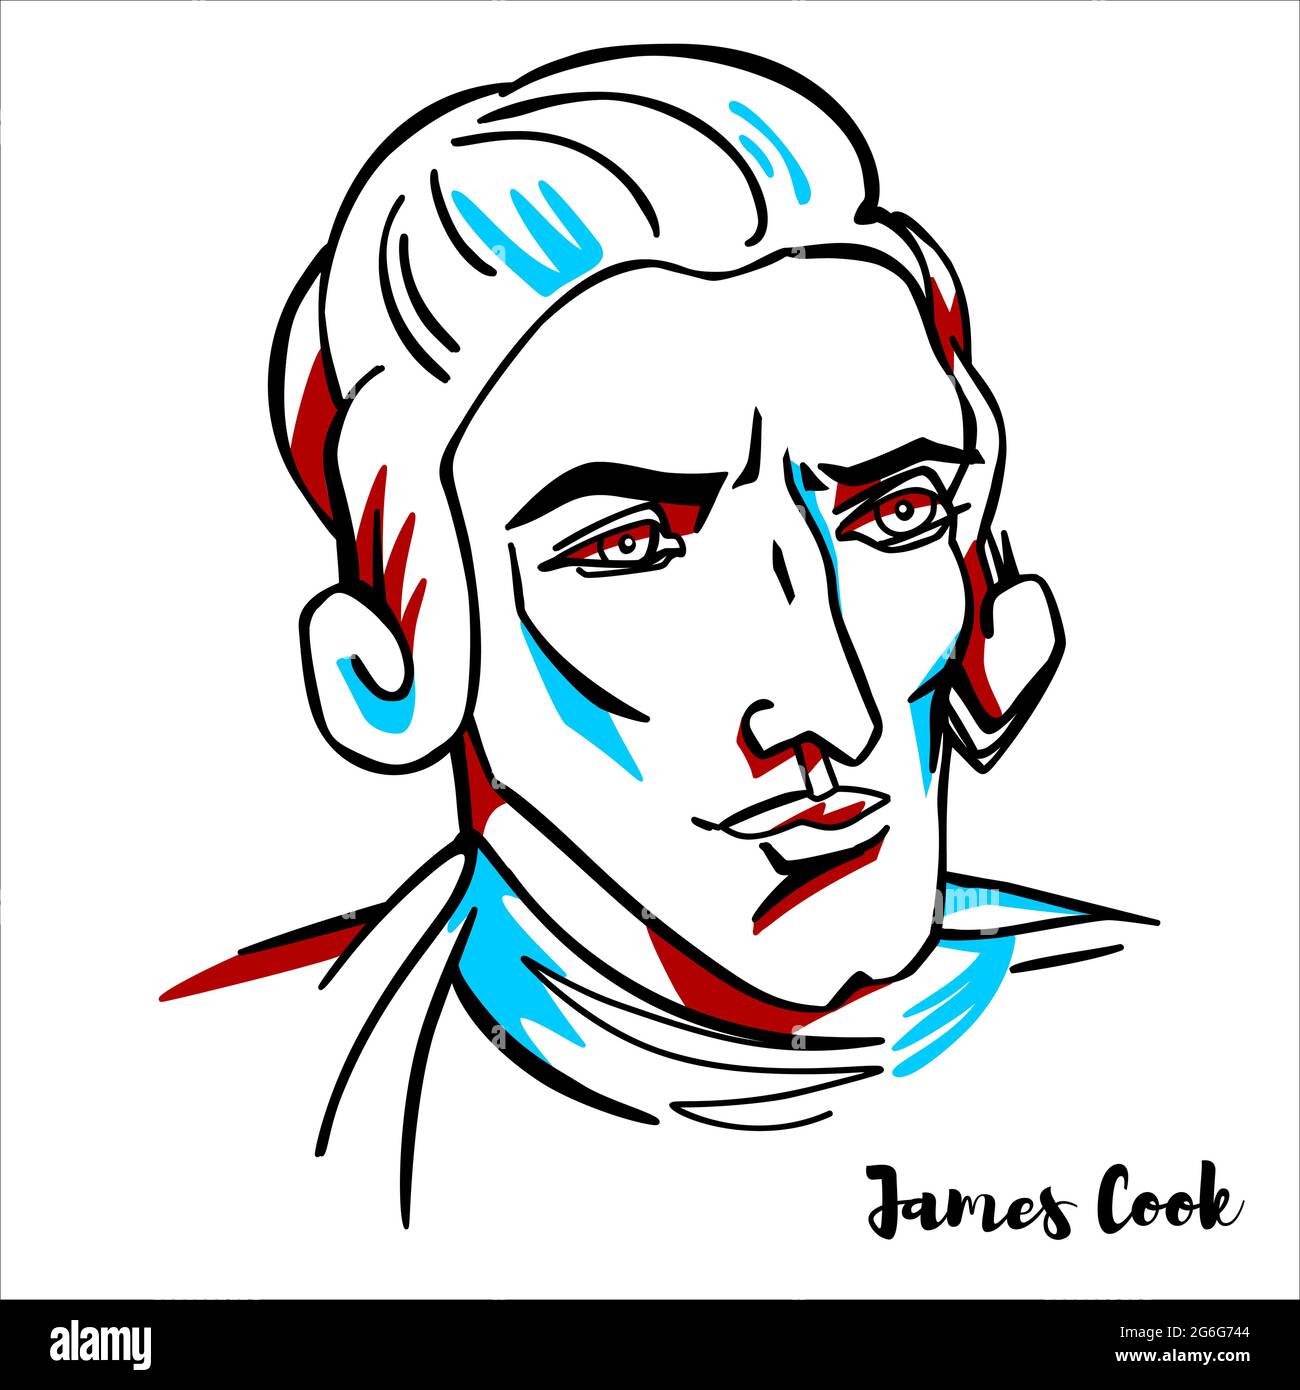 James Cook gravierte Vektorportrait mit Farbkonturen. Britischer Entdecker, Navigator, Kartograph und Kapitän der Royal Navy. Stock Vektor